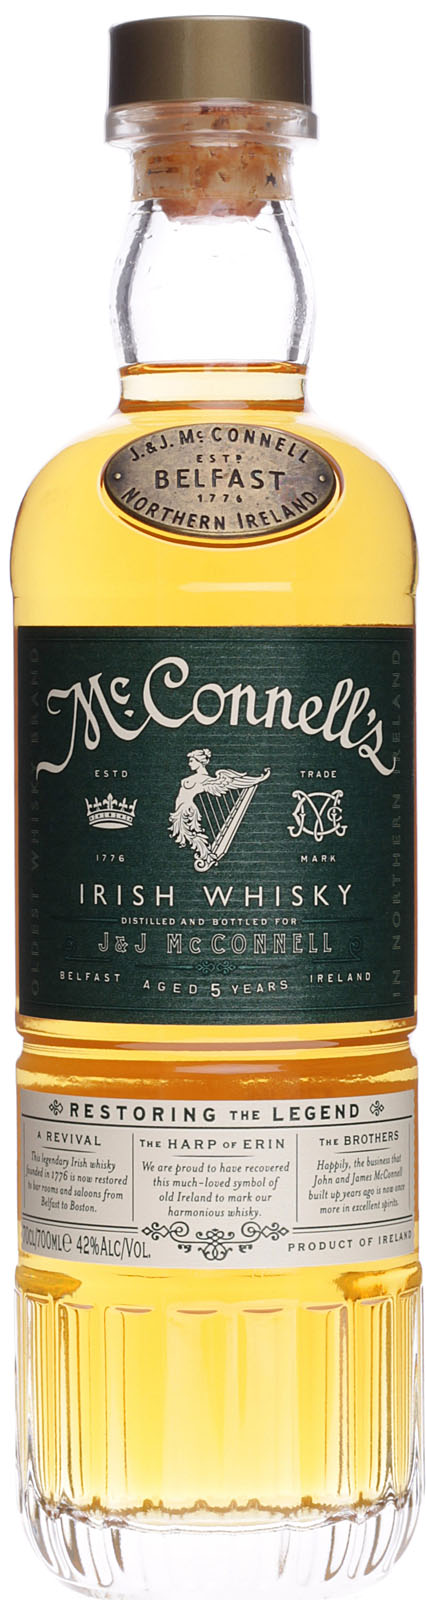 McConnell´s Irish Whisky günstig und schnell bei uns i | Whisky